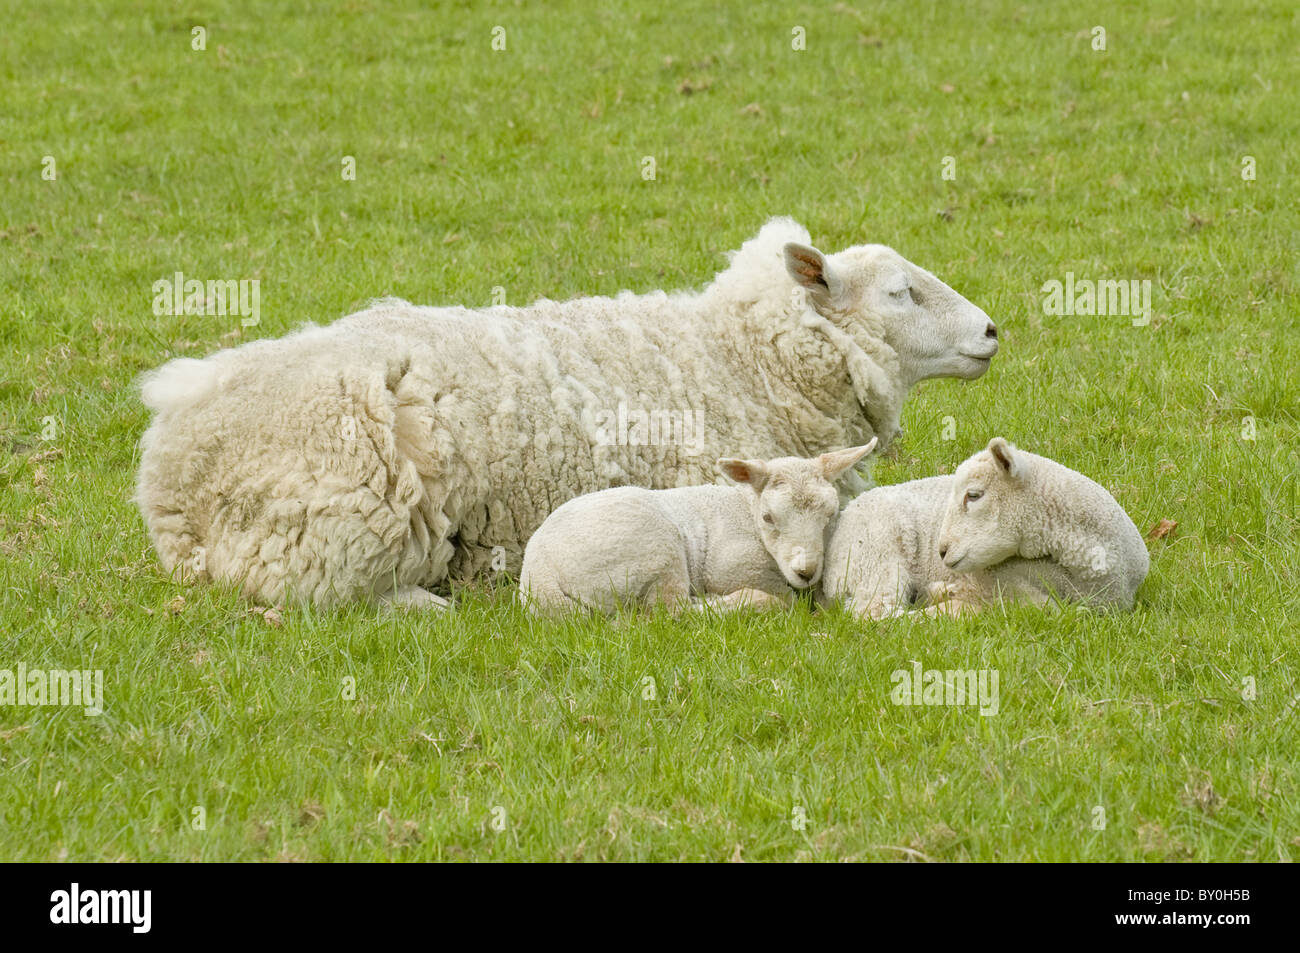 3 ovejas juntas en la granja de césped (oveja soñolienta y dos corderos blancos codados y anidado cerca, descansando y snozing) - Yorkshire, Inglaterra, Reino Unido. Foto de stock